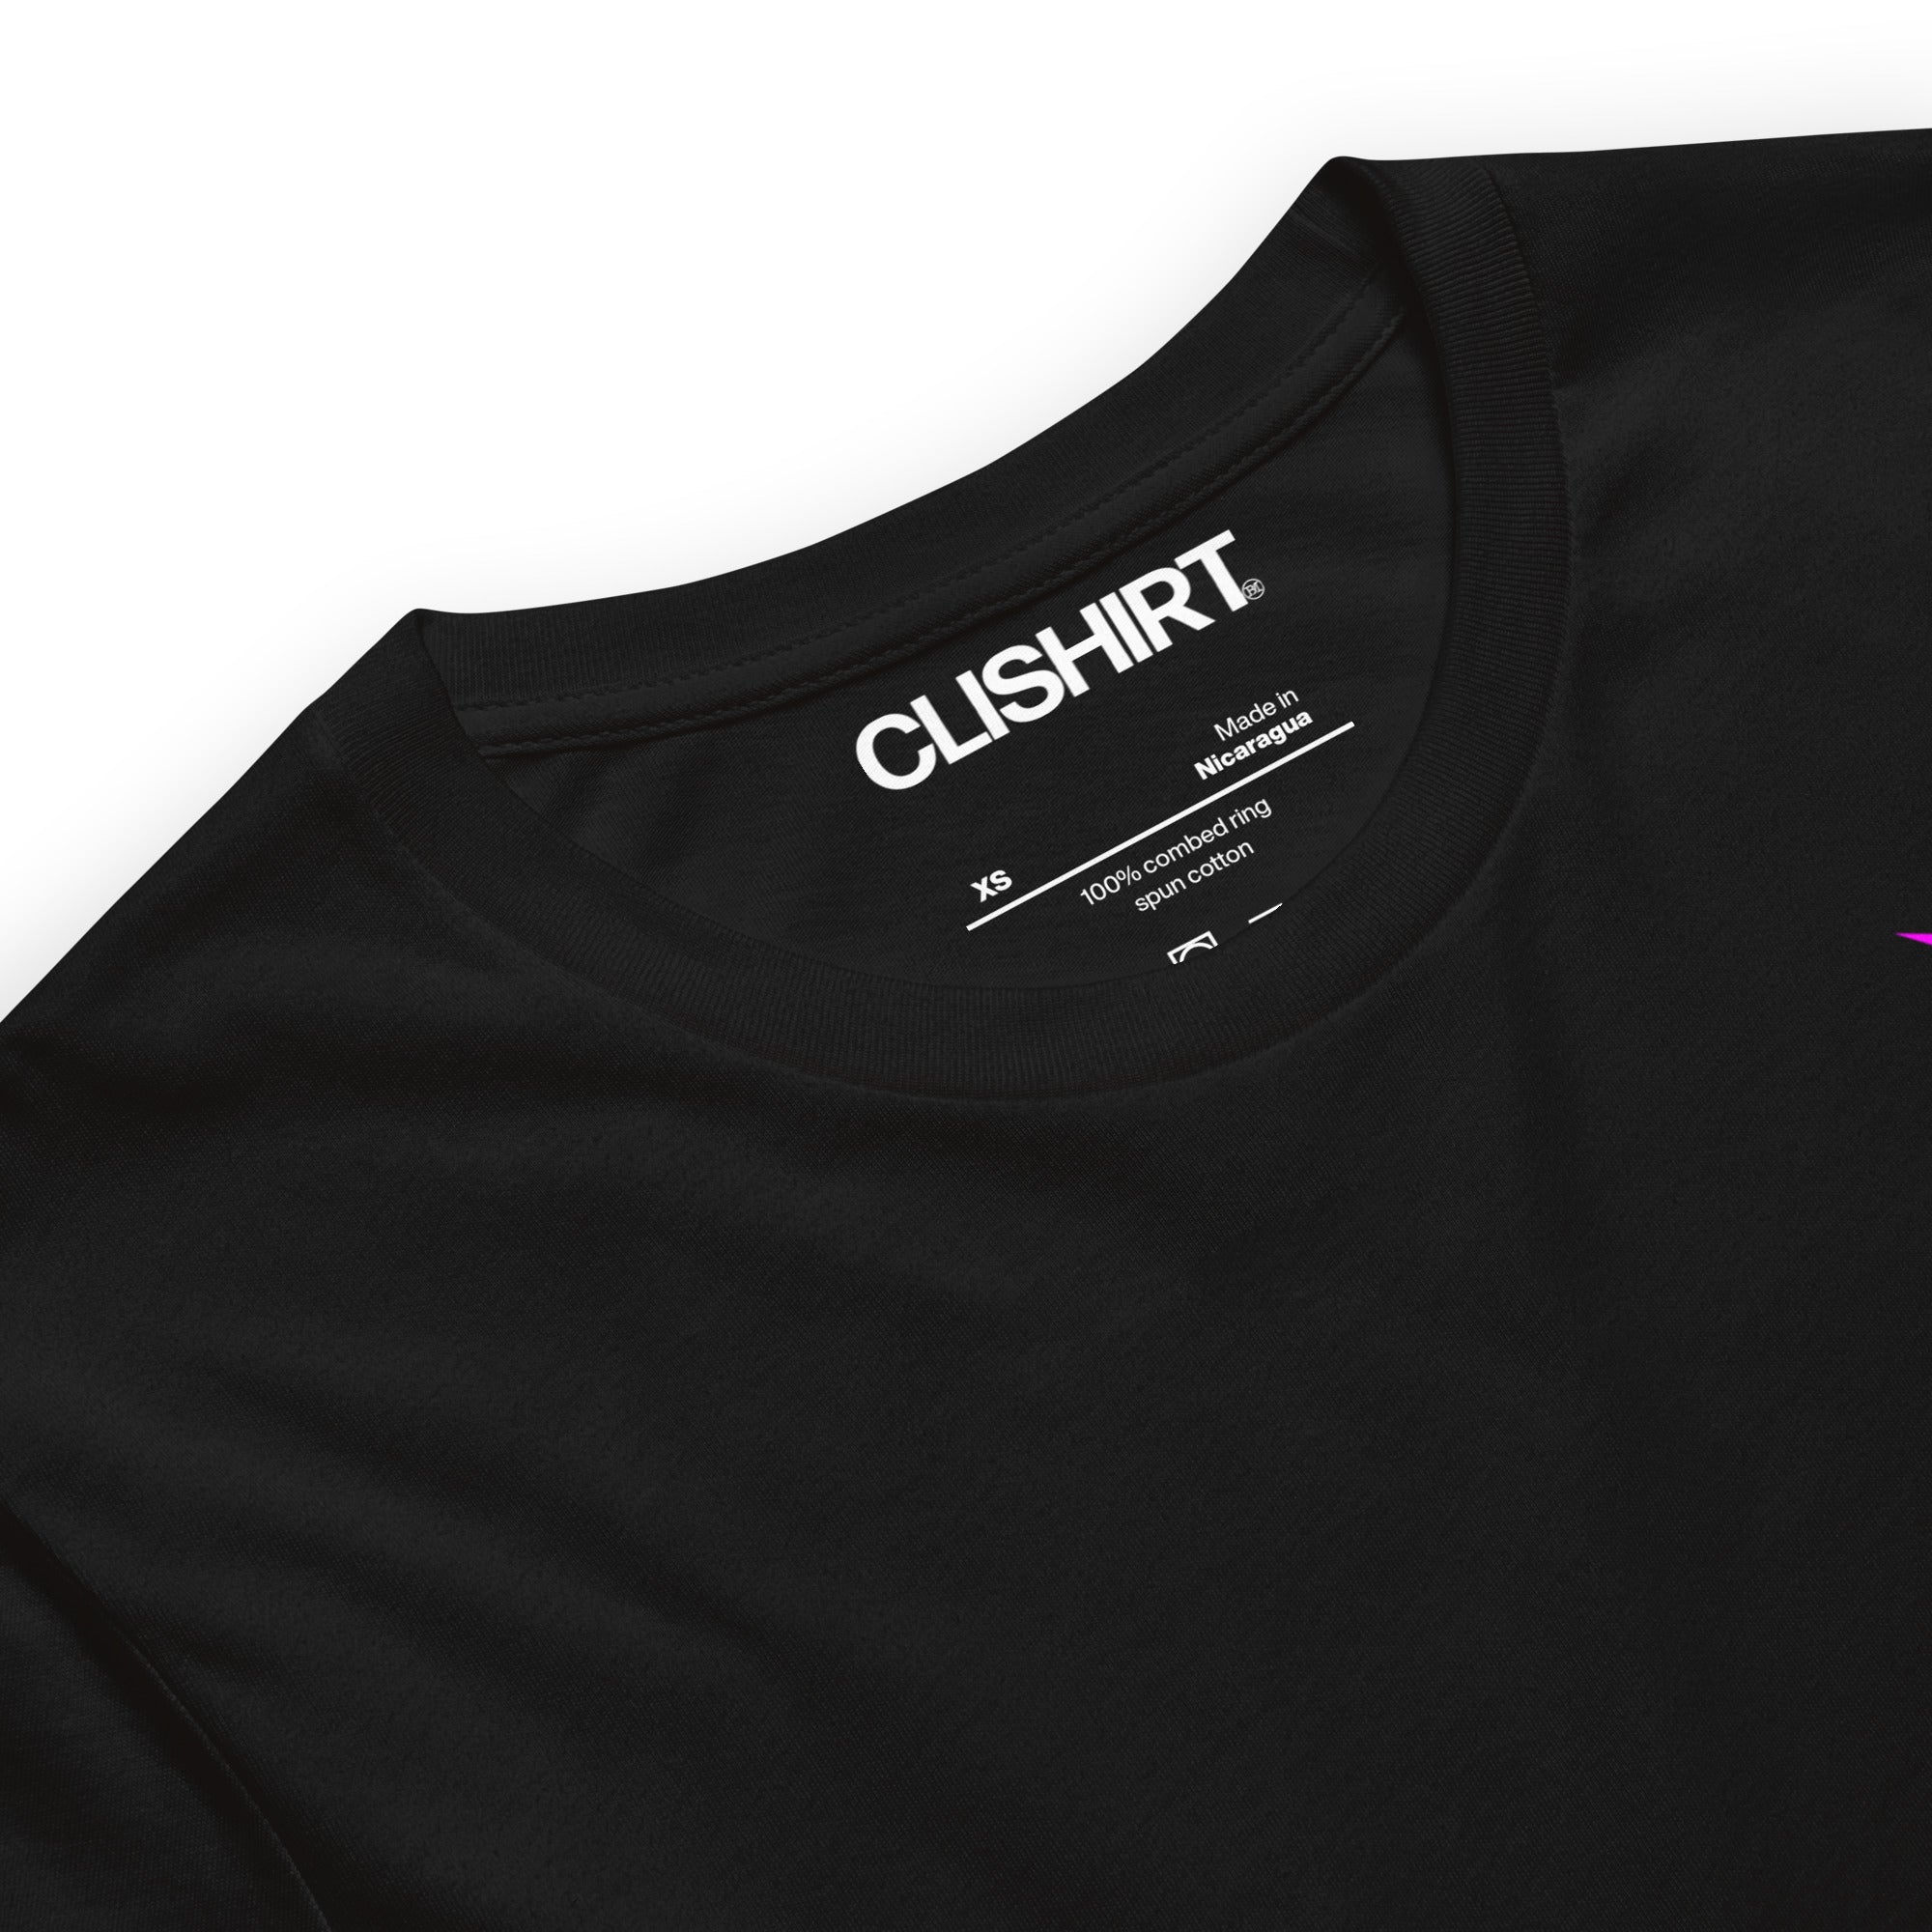 Clishirt© Magenta Fish Unisex t-shirt